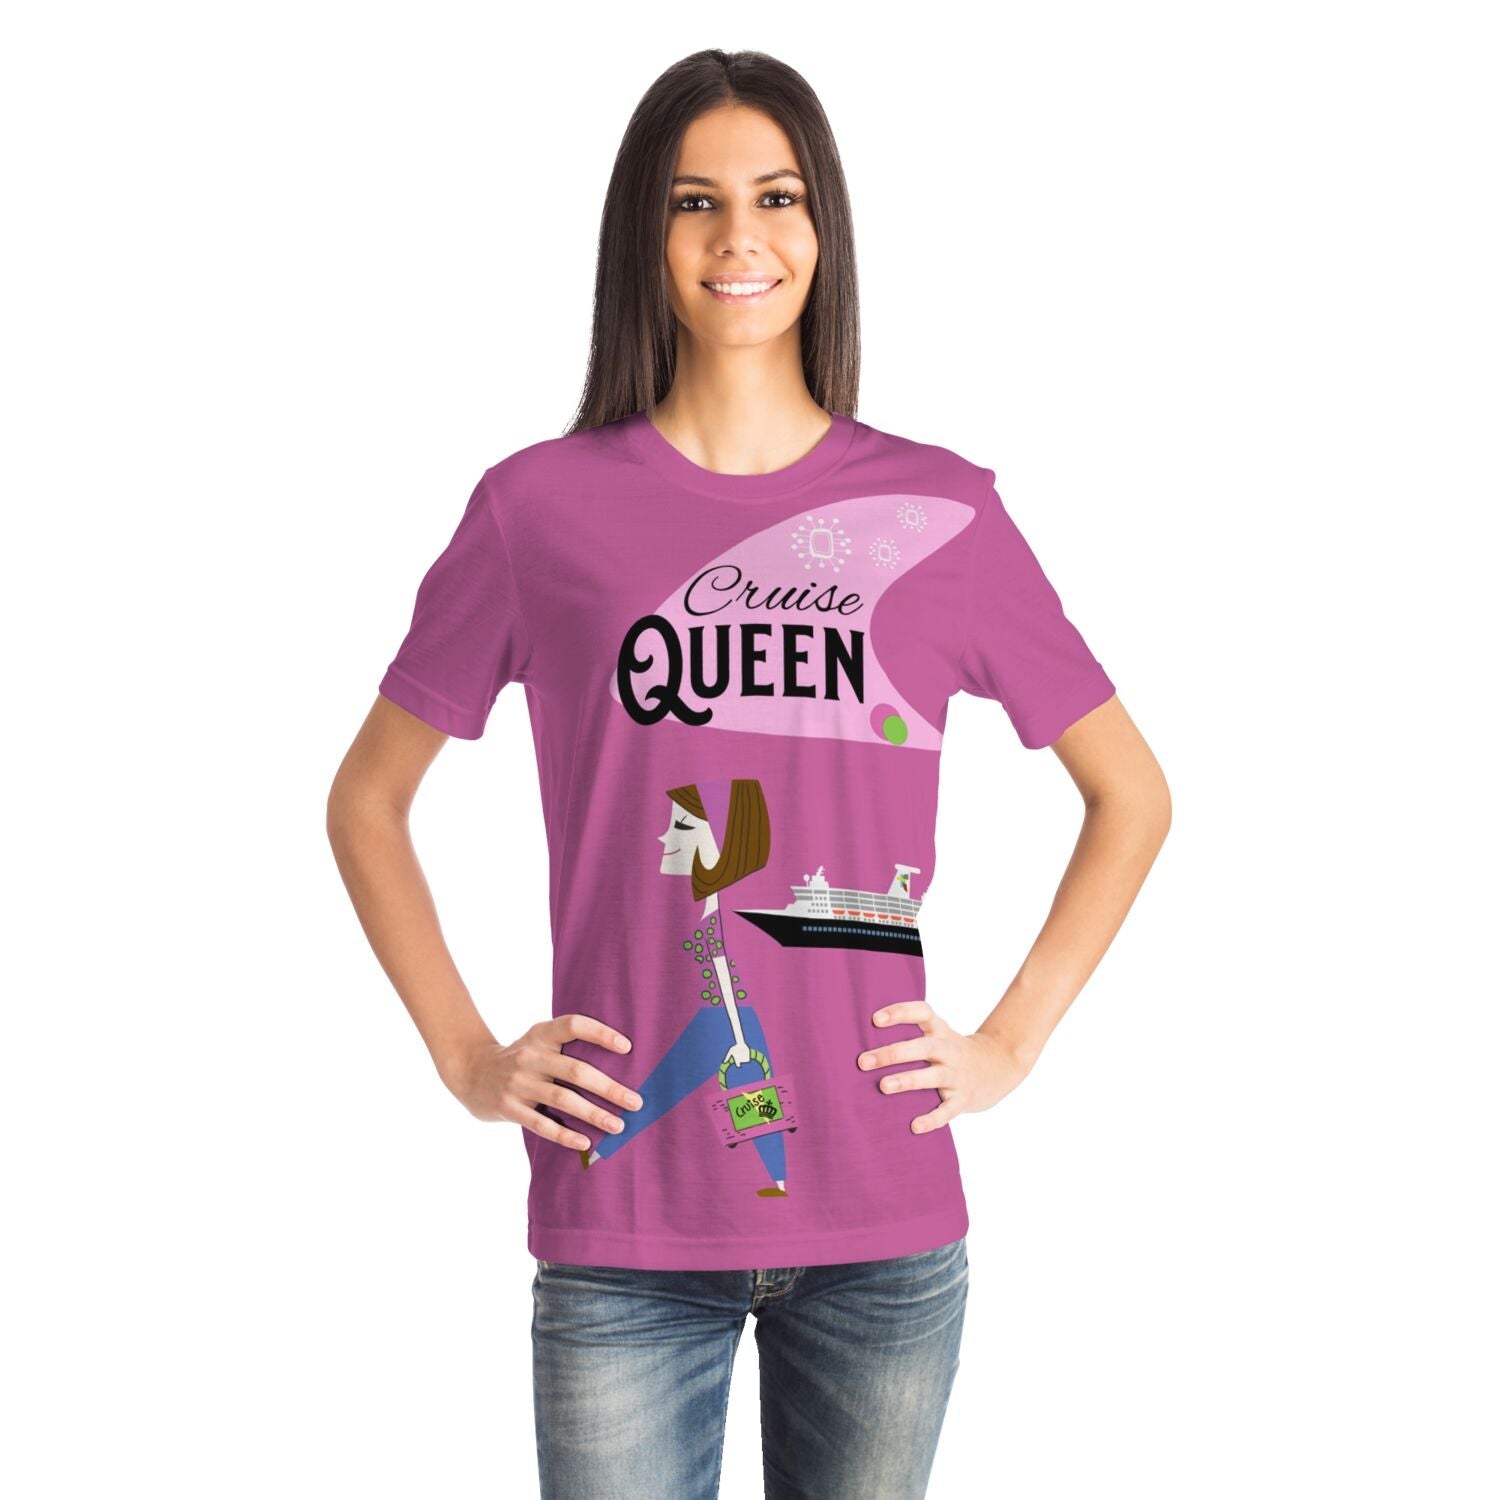 Cruise Queen T-shirt - Gifternaut